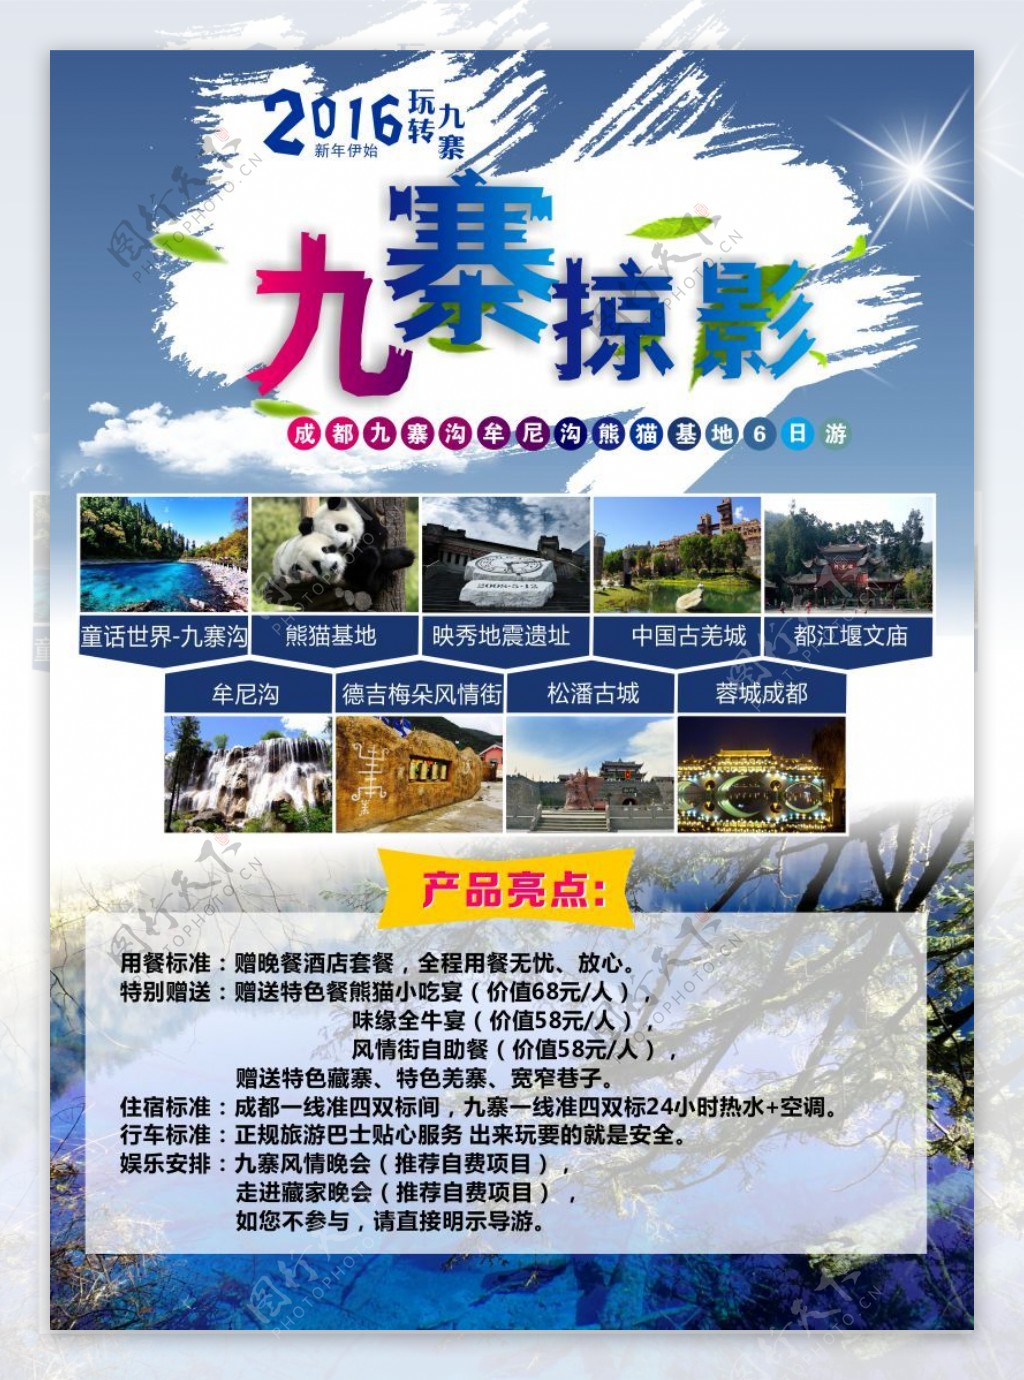 旅行社九寨沟宣传广告海报设计CDR